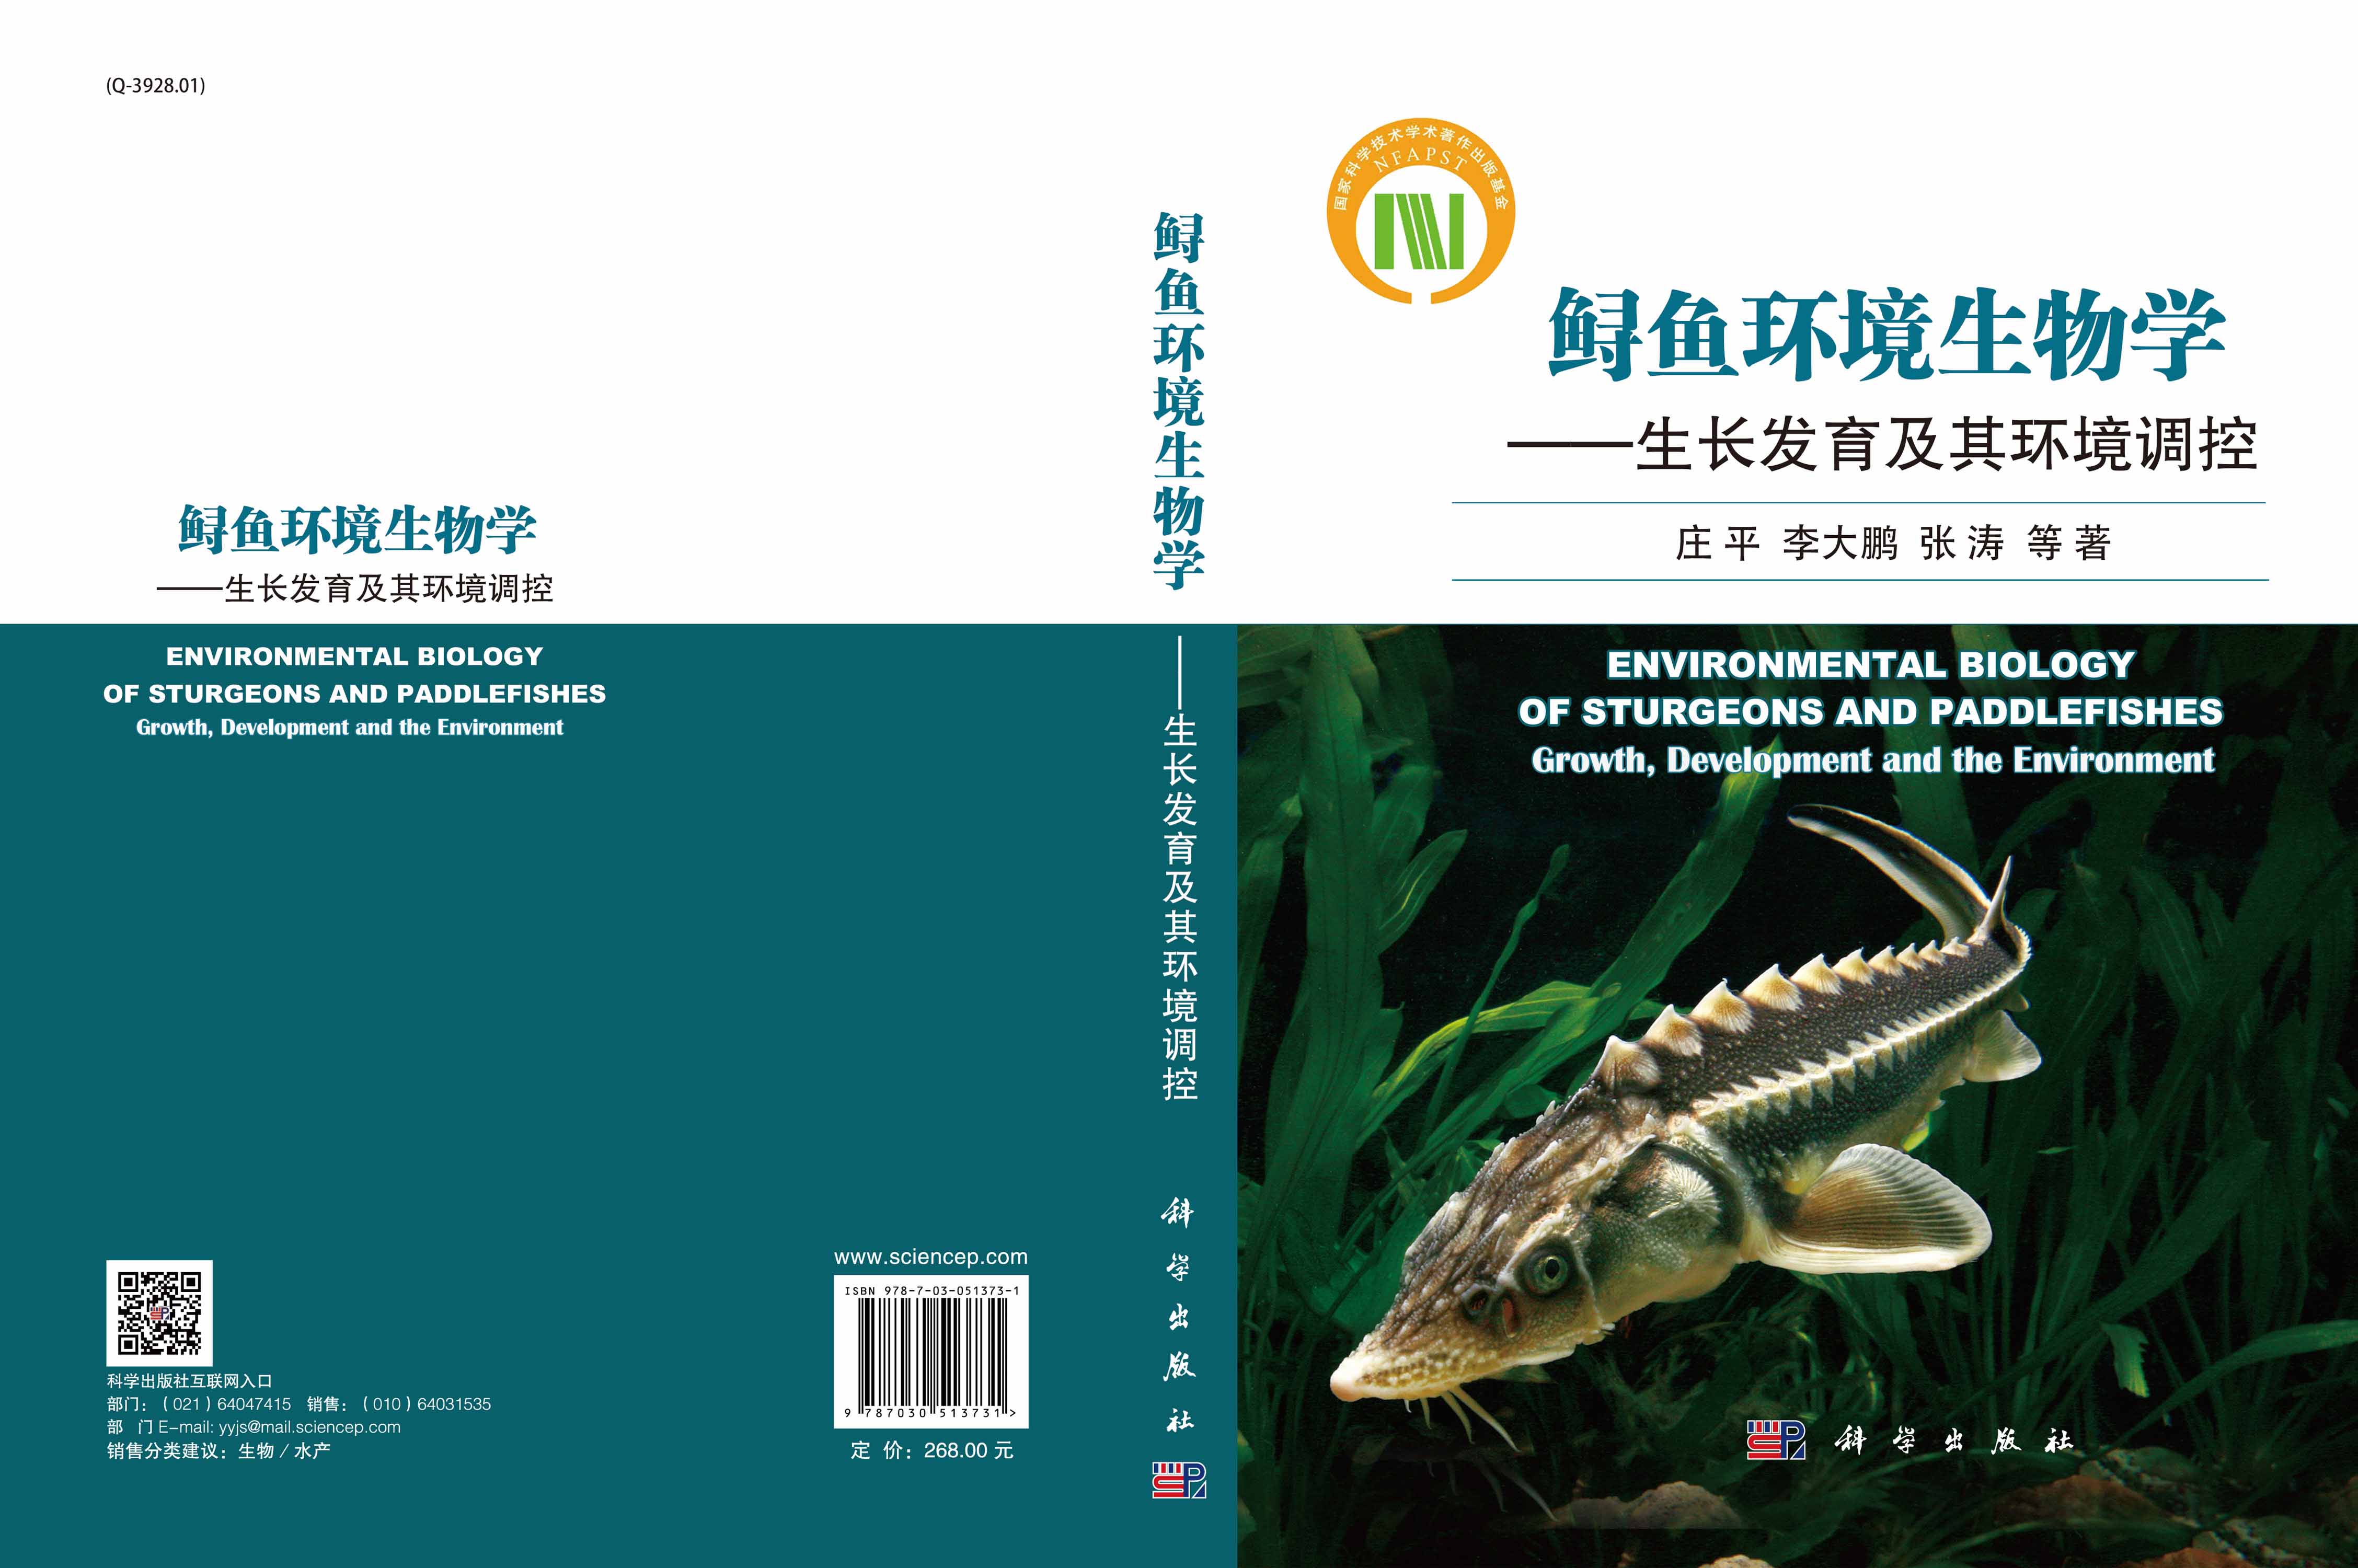 鲟鱼环境生物学-生长发育及其环境调控